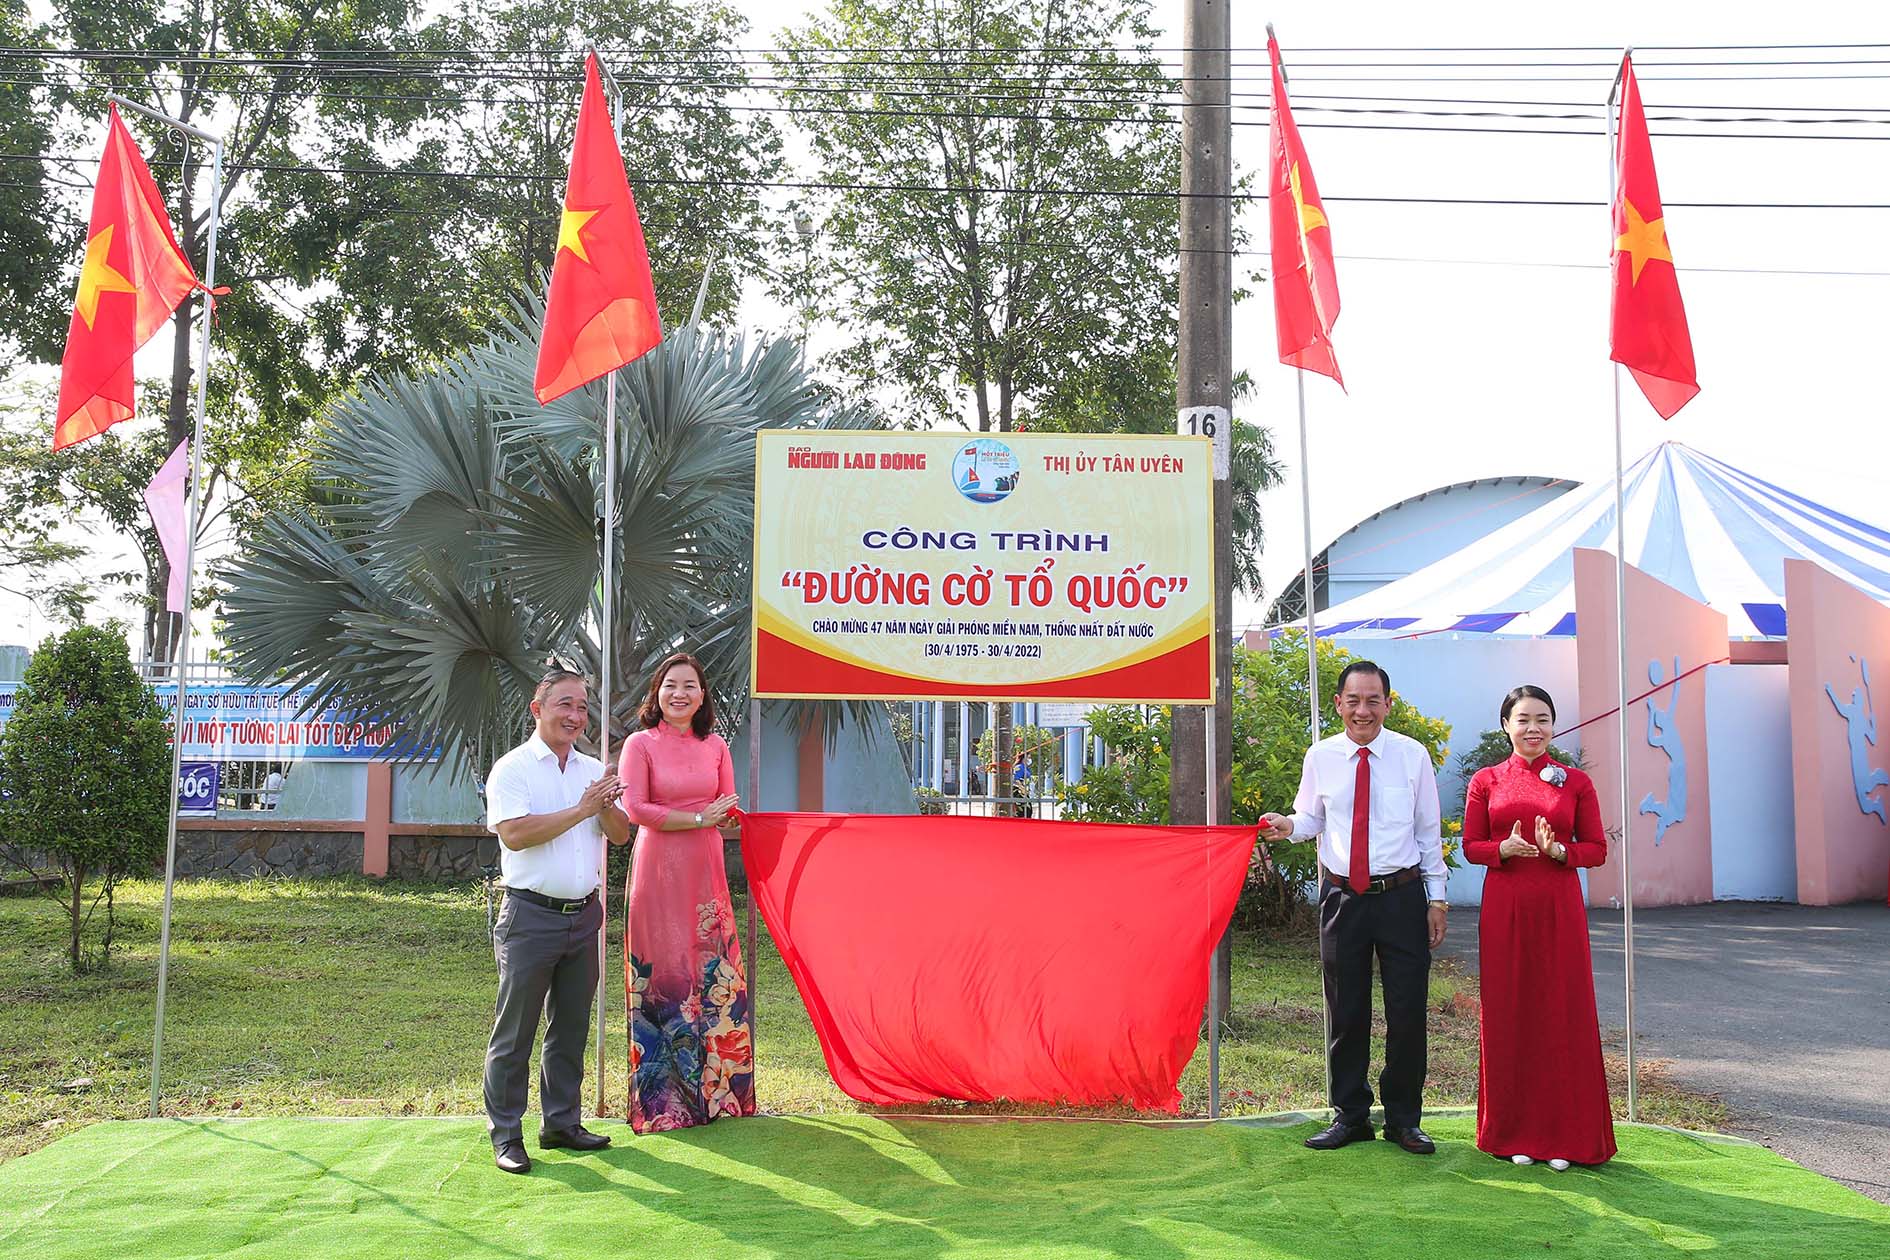 Cờ đảng tổ quốc là biểu tượng toàn quyền của đất nước và đảng CSVN. Đây là cờ mỹ phẩm với sắc đỏ đậm kết hợp cùng sao vàng bốn cánh giữa nền cờ màu đỏ hình tam giác. Khi cờ đảng tổ quốc bay trong gió, nó thể hiện sự đoàn kết và sức mạnh của toàn dân tộc Việt Nam.